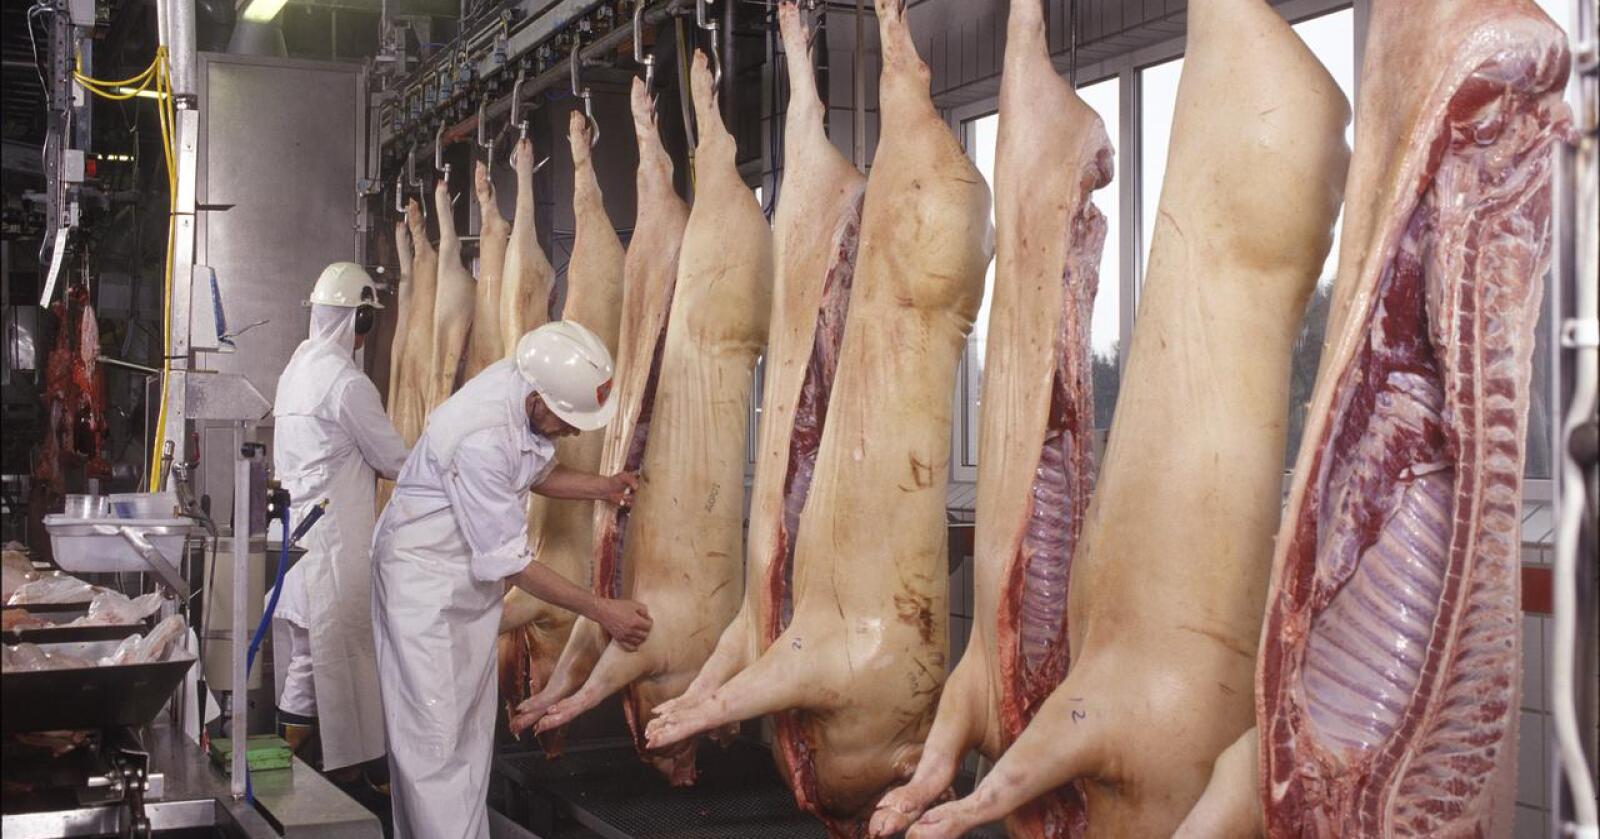 Nortura kunne mandag ta opp igjen slakting av gris. Arkivfoto: Nortura